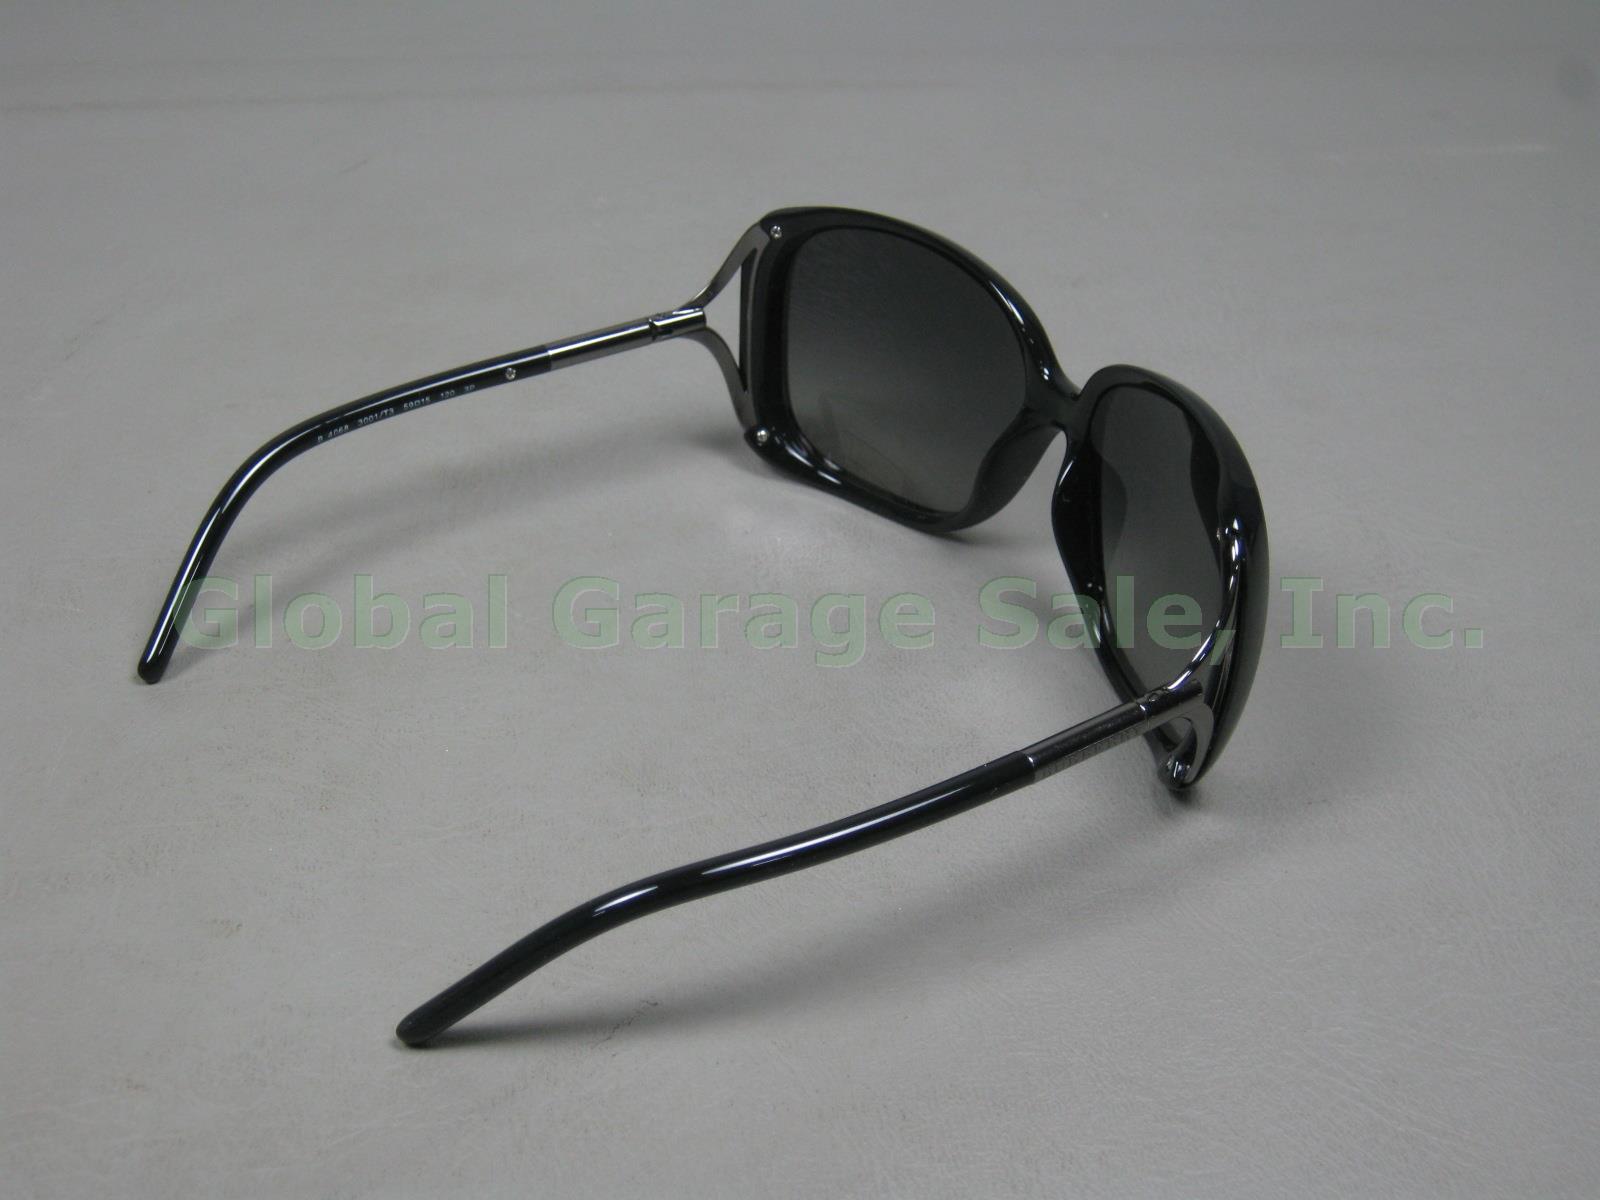 Womens NOS Burberry B 4068 3001/T3 59 15 120 3P Polarized Sunglasses 3